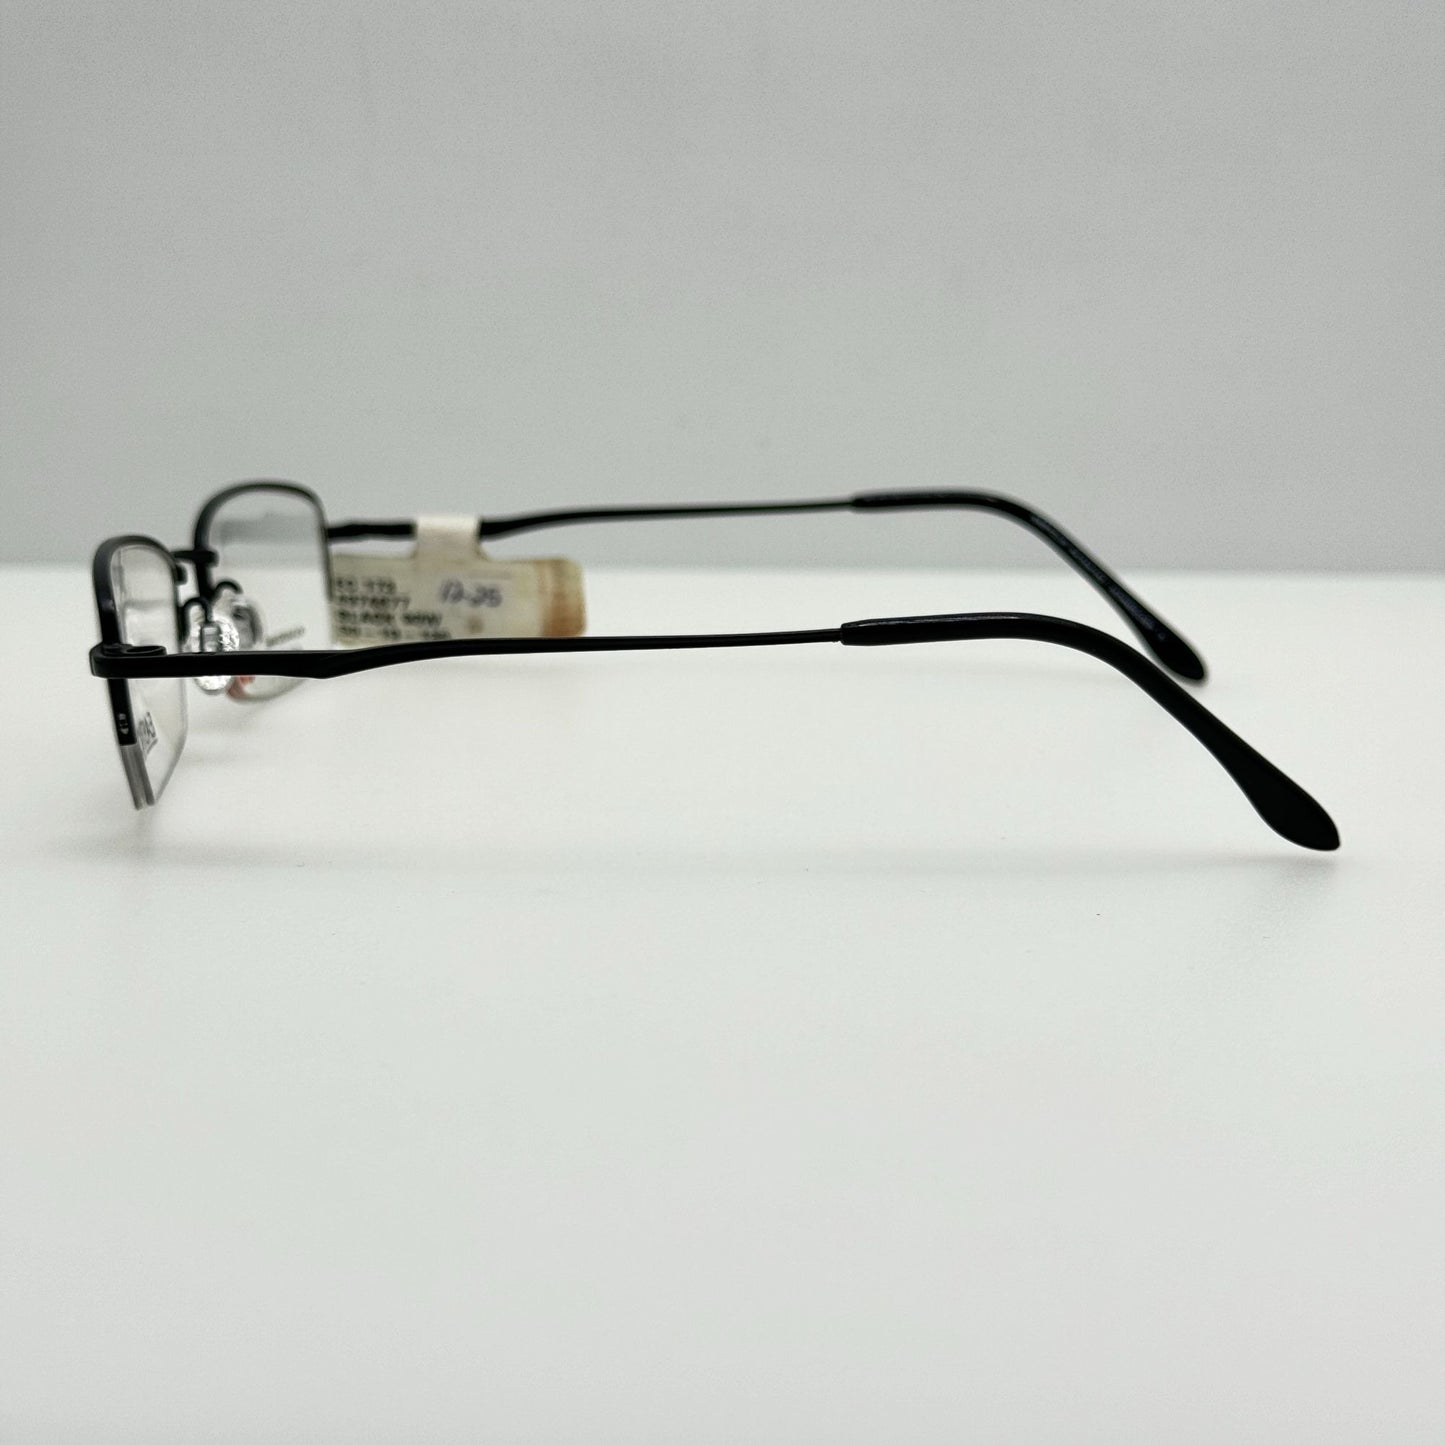 Easyclip Eyeglasses Eye Glasses Frames EC 173 90 50-19-135 W/ Clip